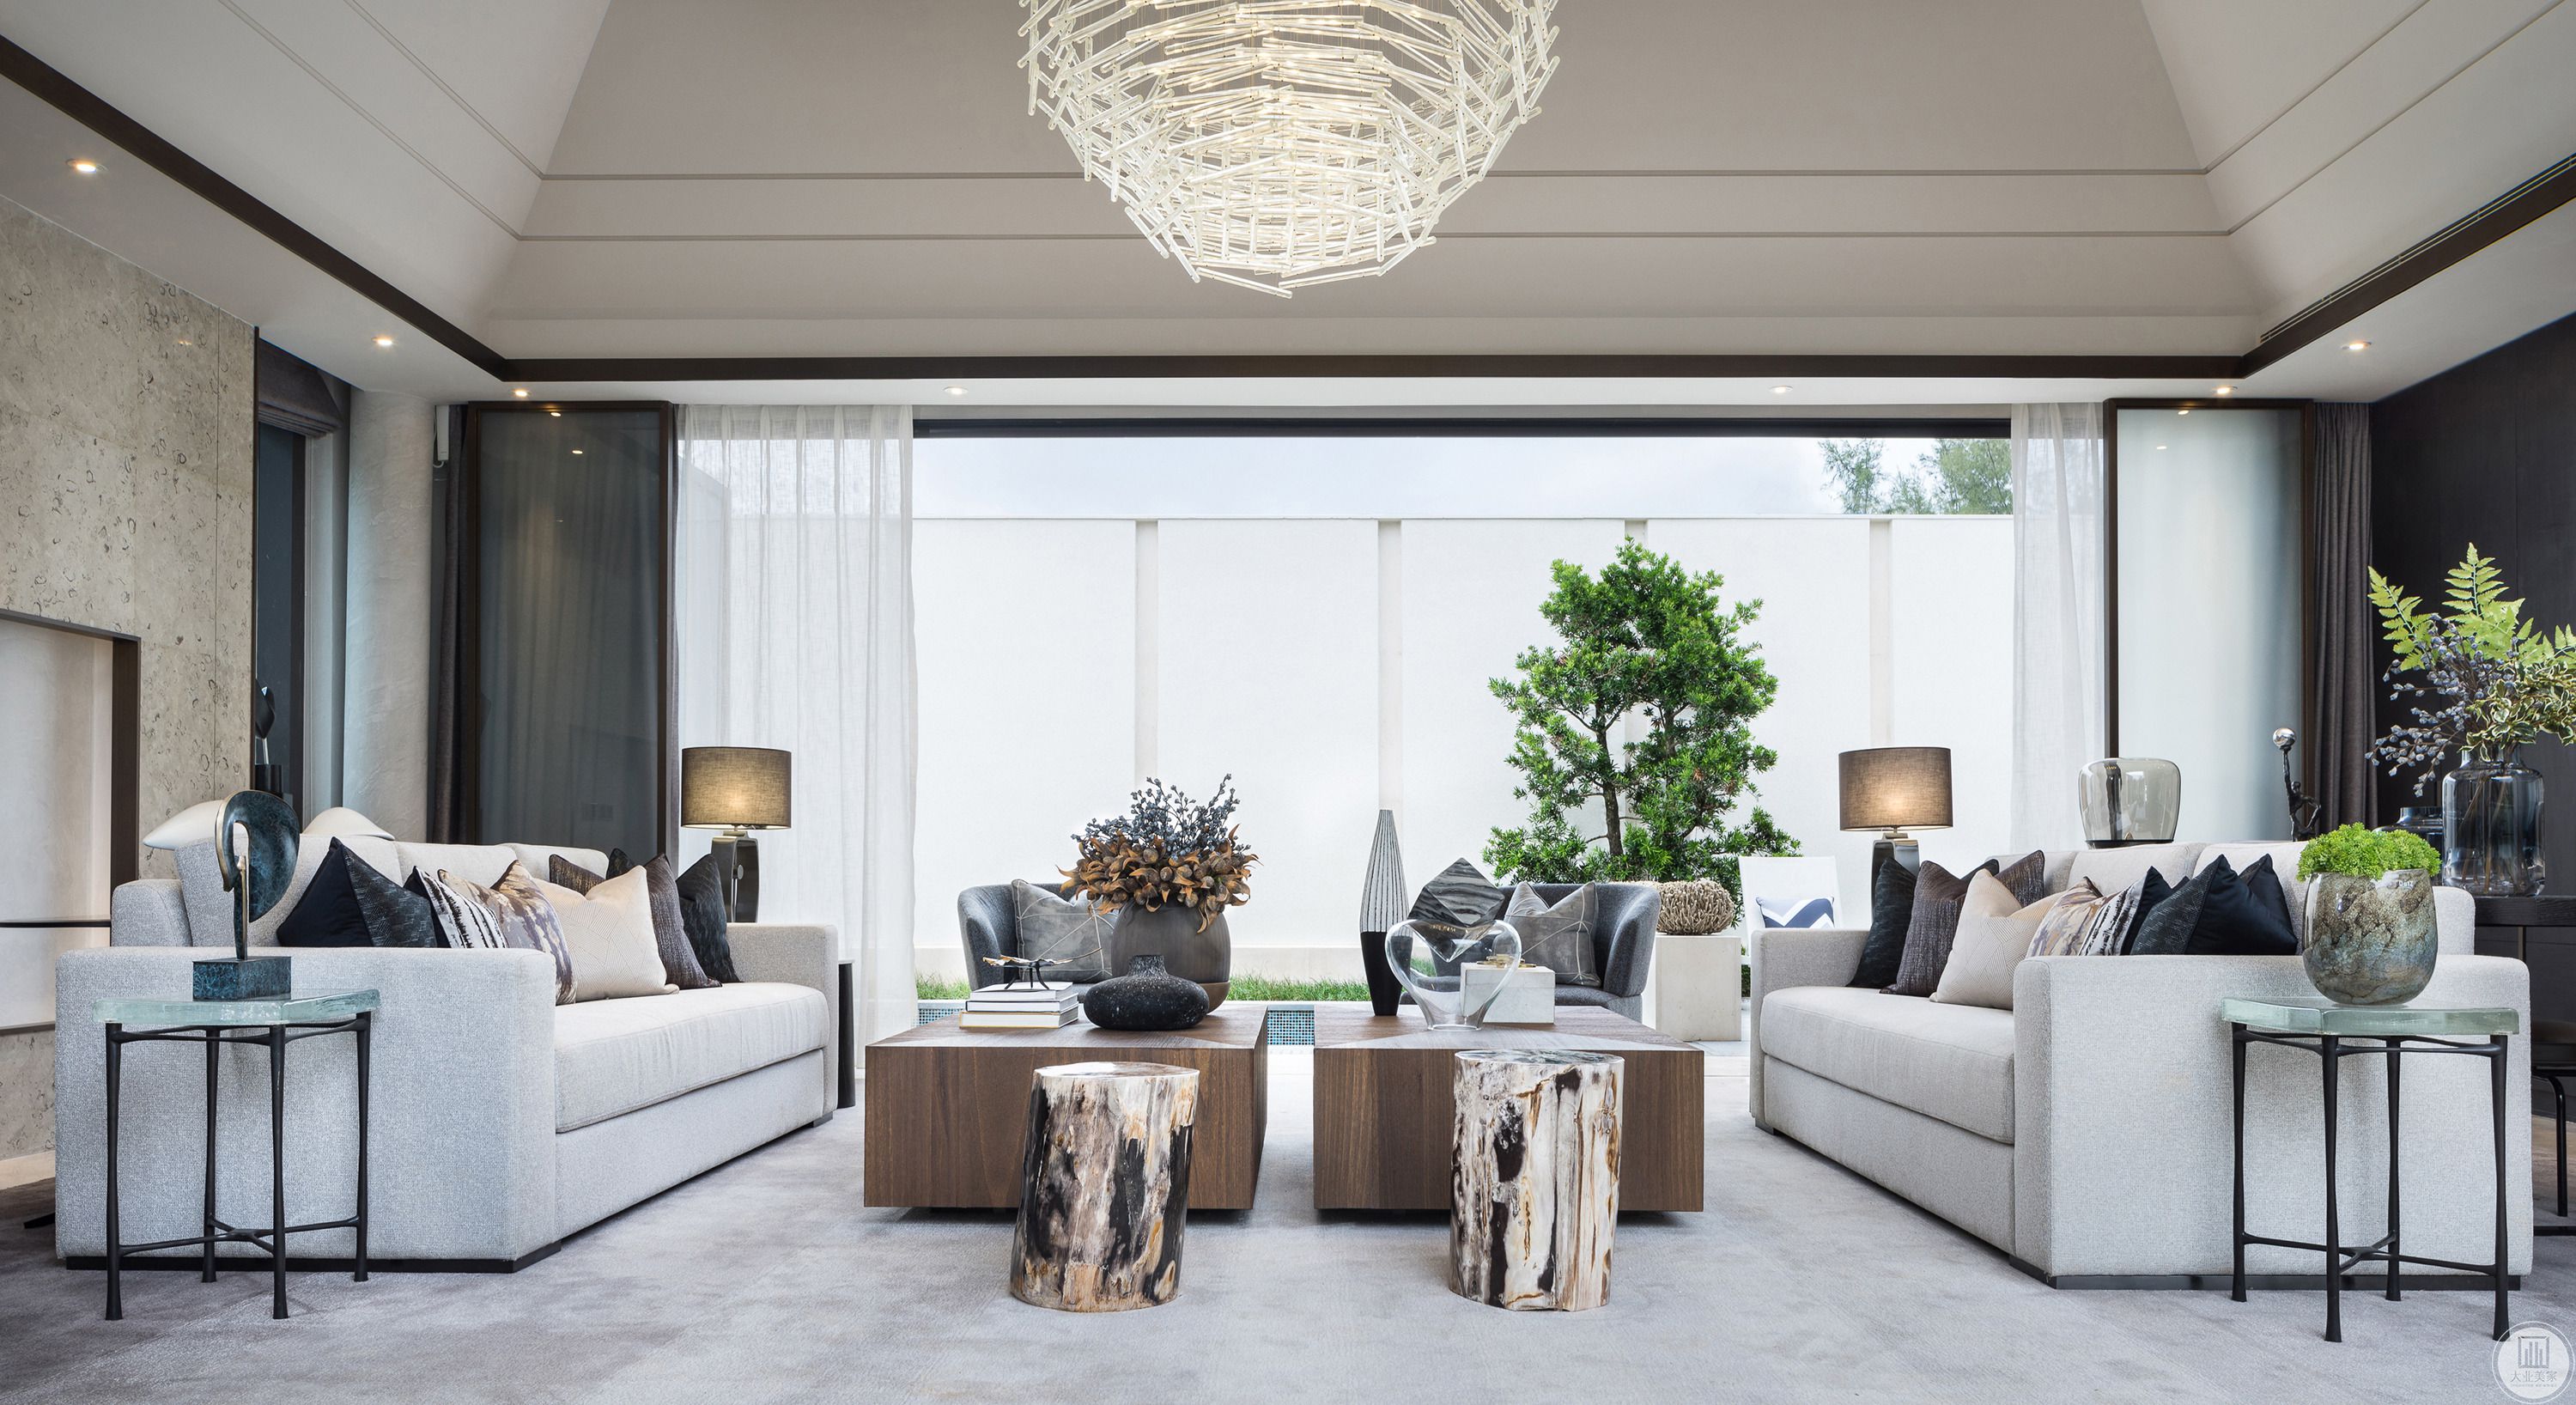 白色的简约布艺沙发搭配木质的茶几，加上引入室内的绿色盆栽，与落地窗完美搭配，让客厅充满自然舒适的感觉,落地窗和地毯完美融合，舒适怡人。